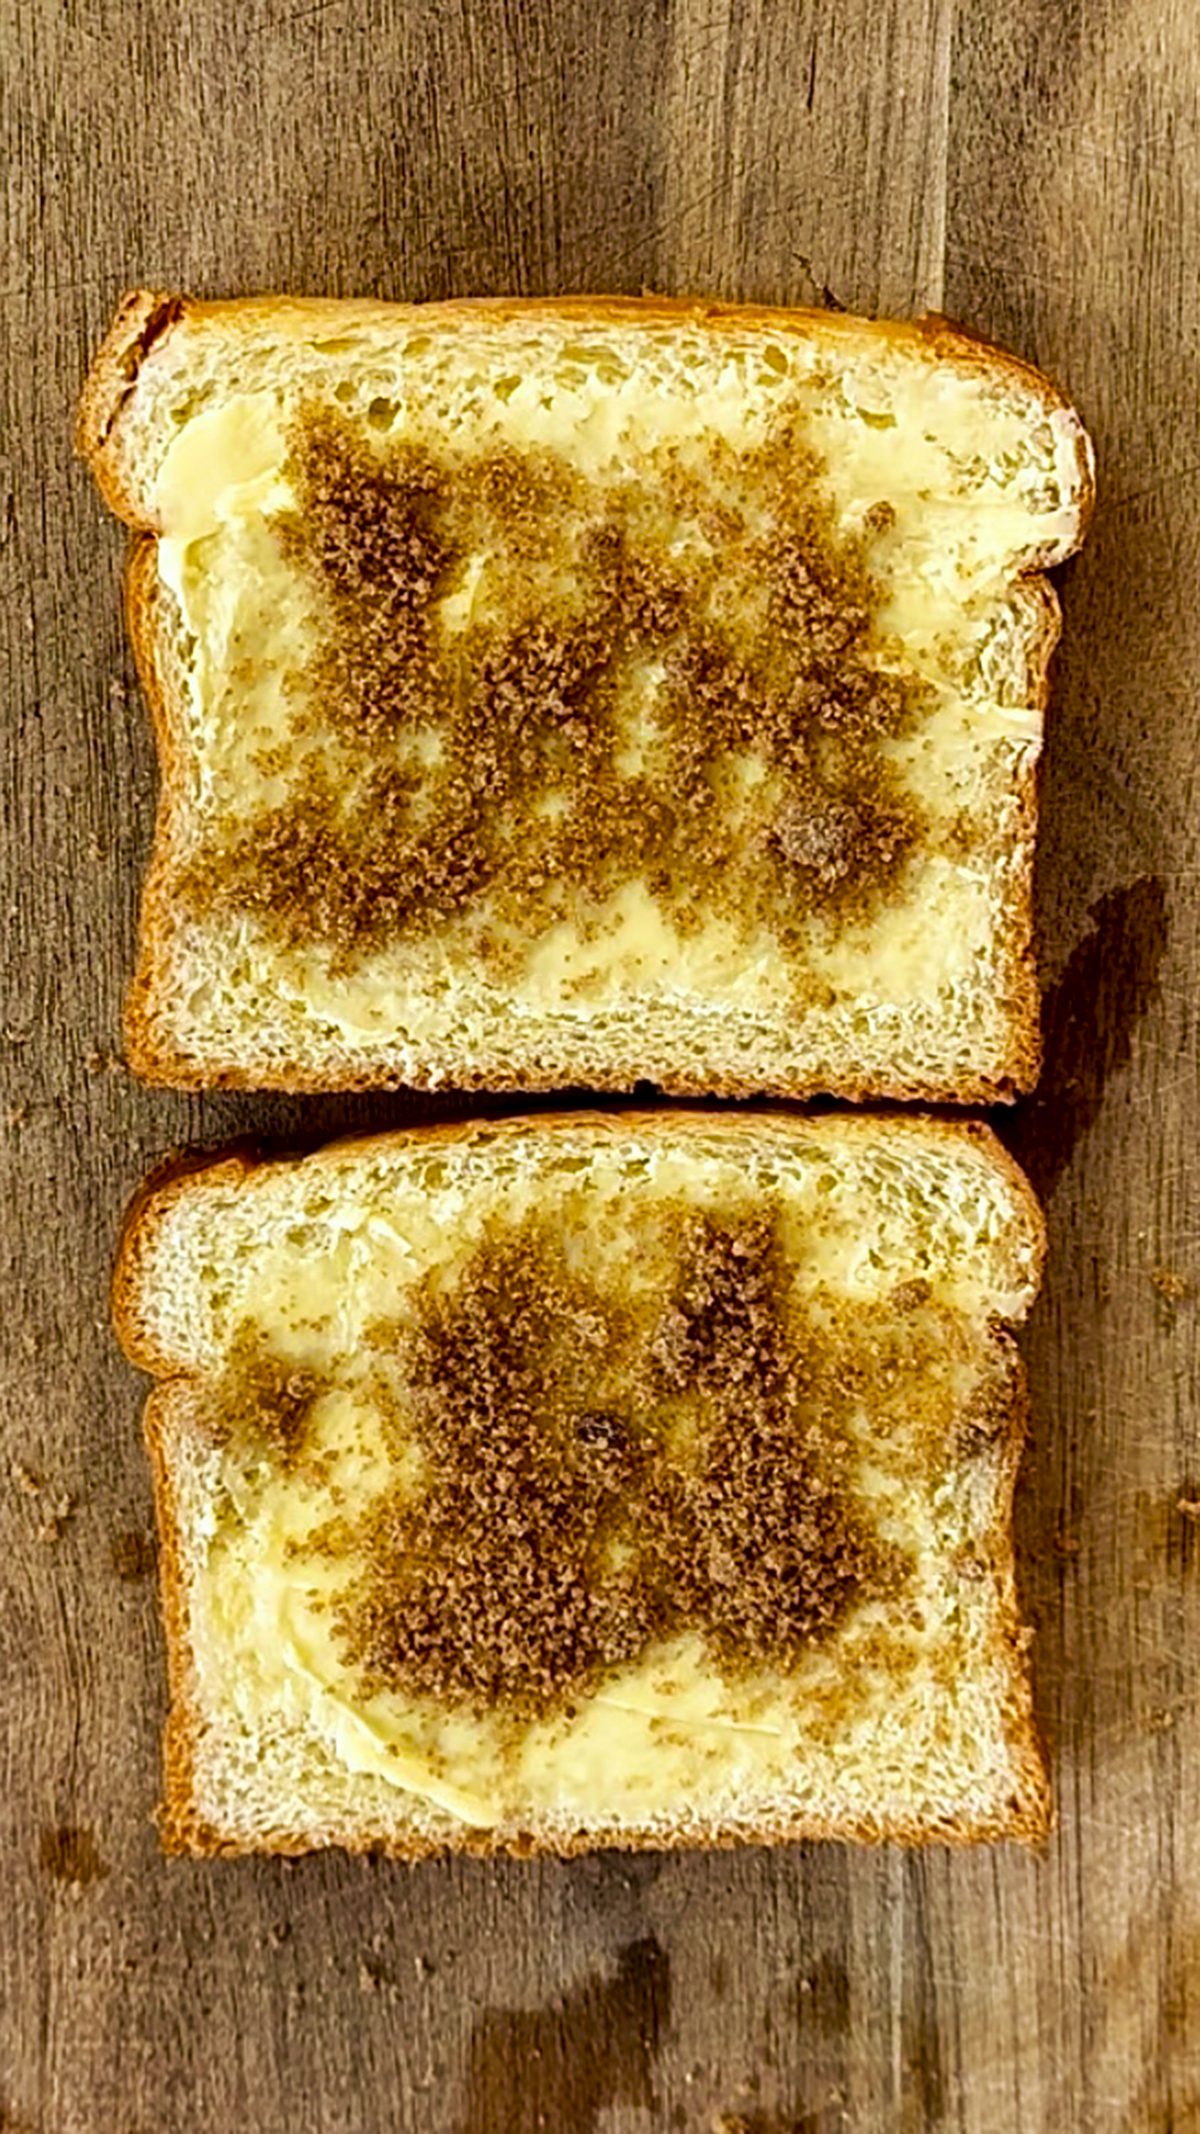 Brioche Bread with Butter and Cinnamon